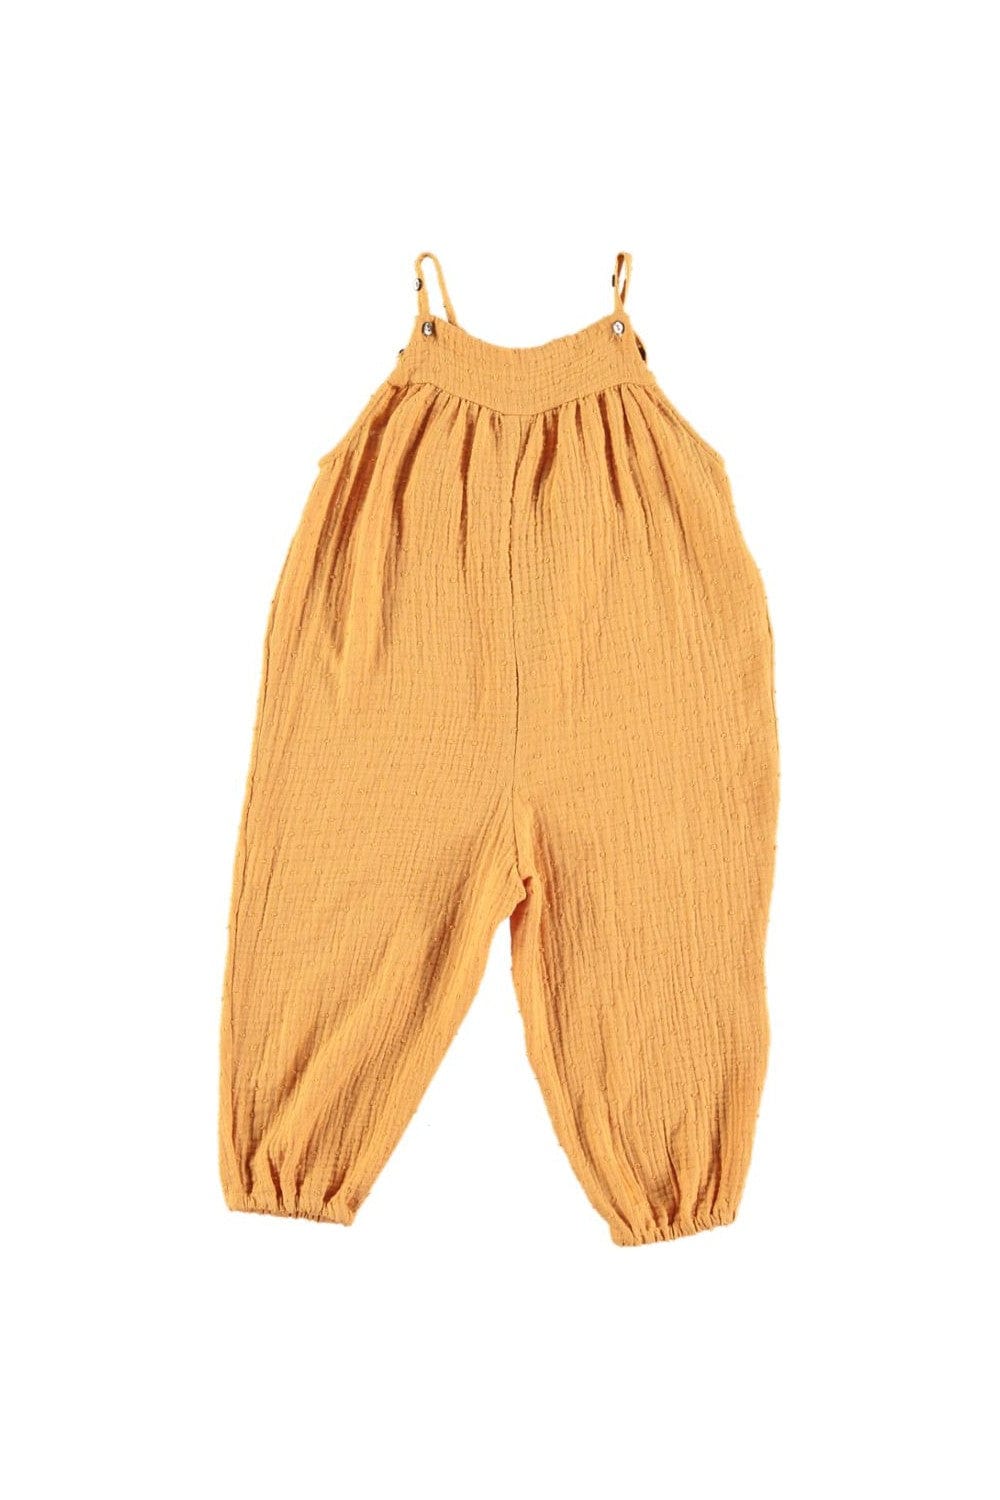 Risu Risu Clothing / Tops 3M Marelle  Baby Jumpsuit - Orangeade